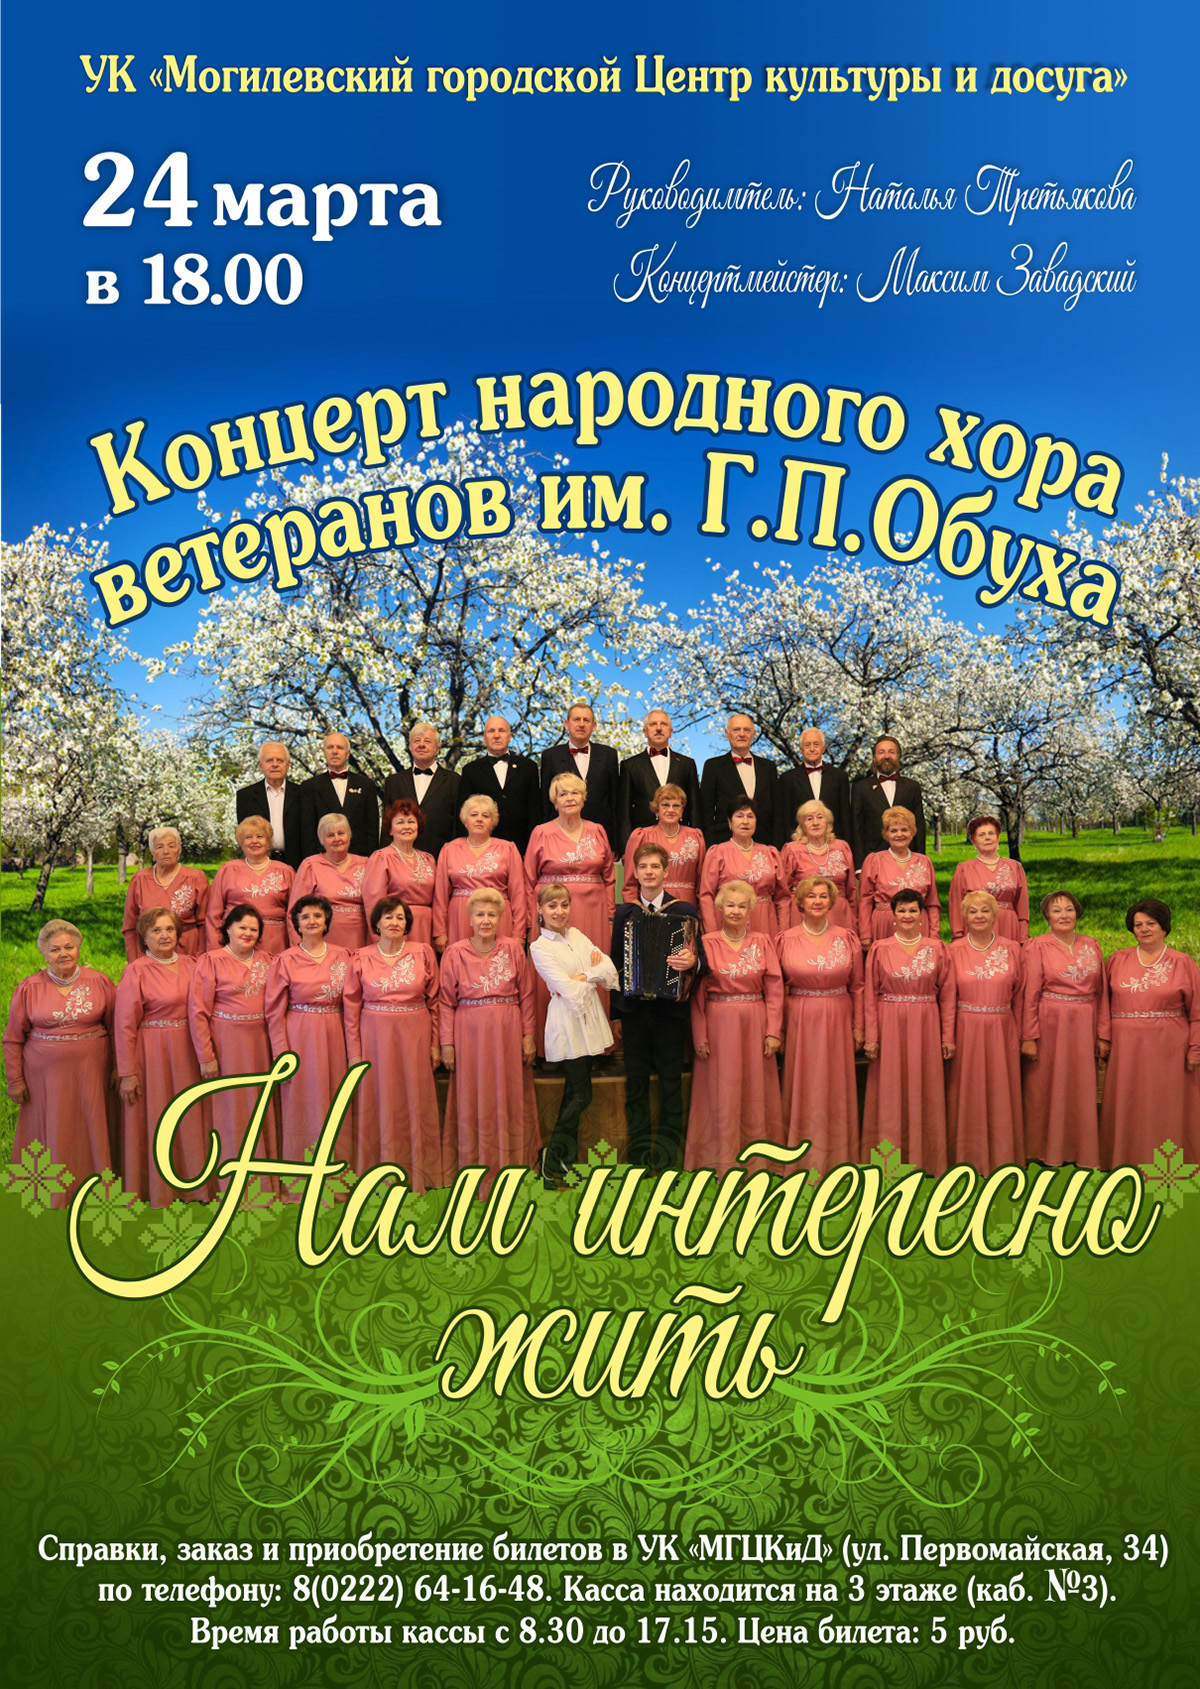 Концерт народного хора ветеранов им. Г.П.Обуха пройдет в Могилеве 24 марта